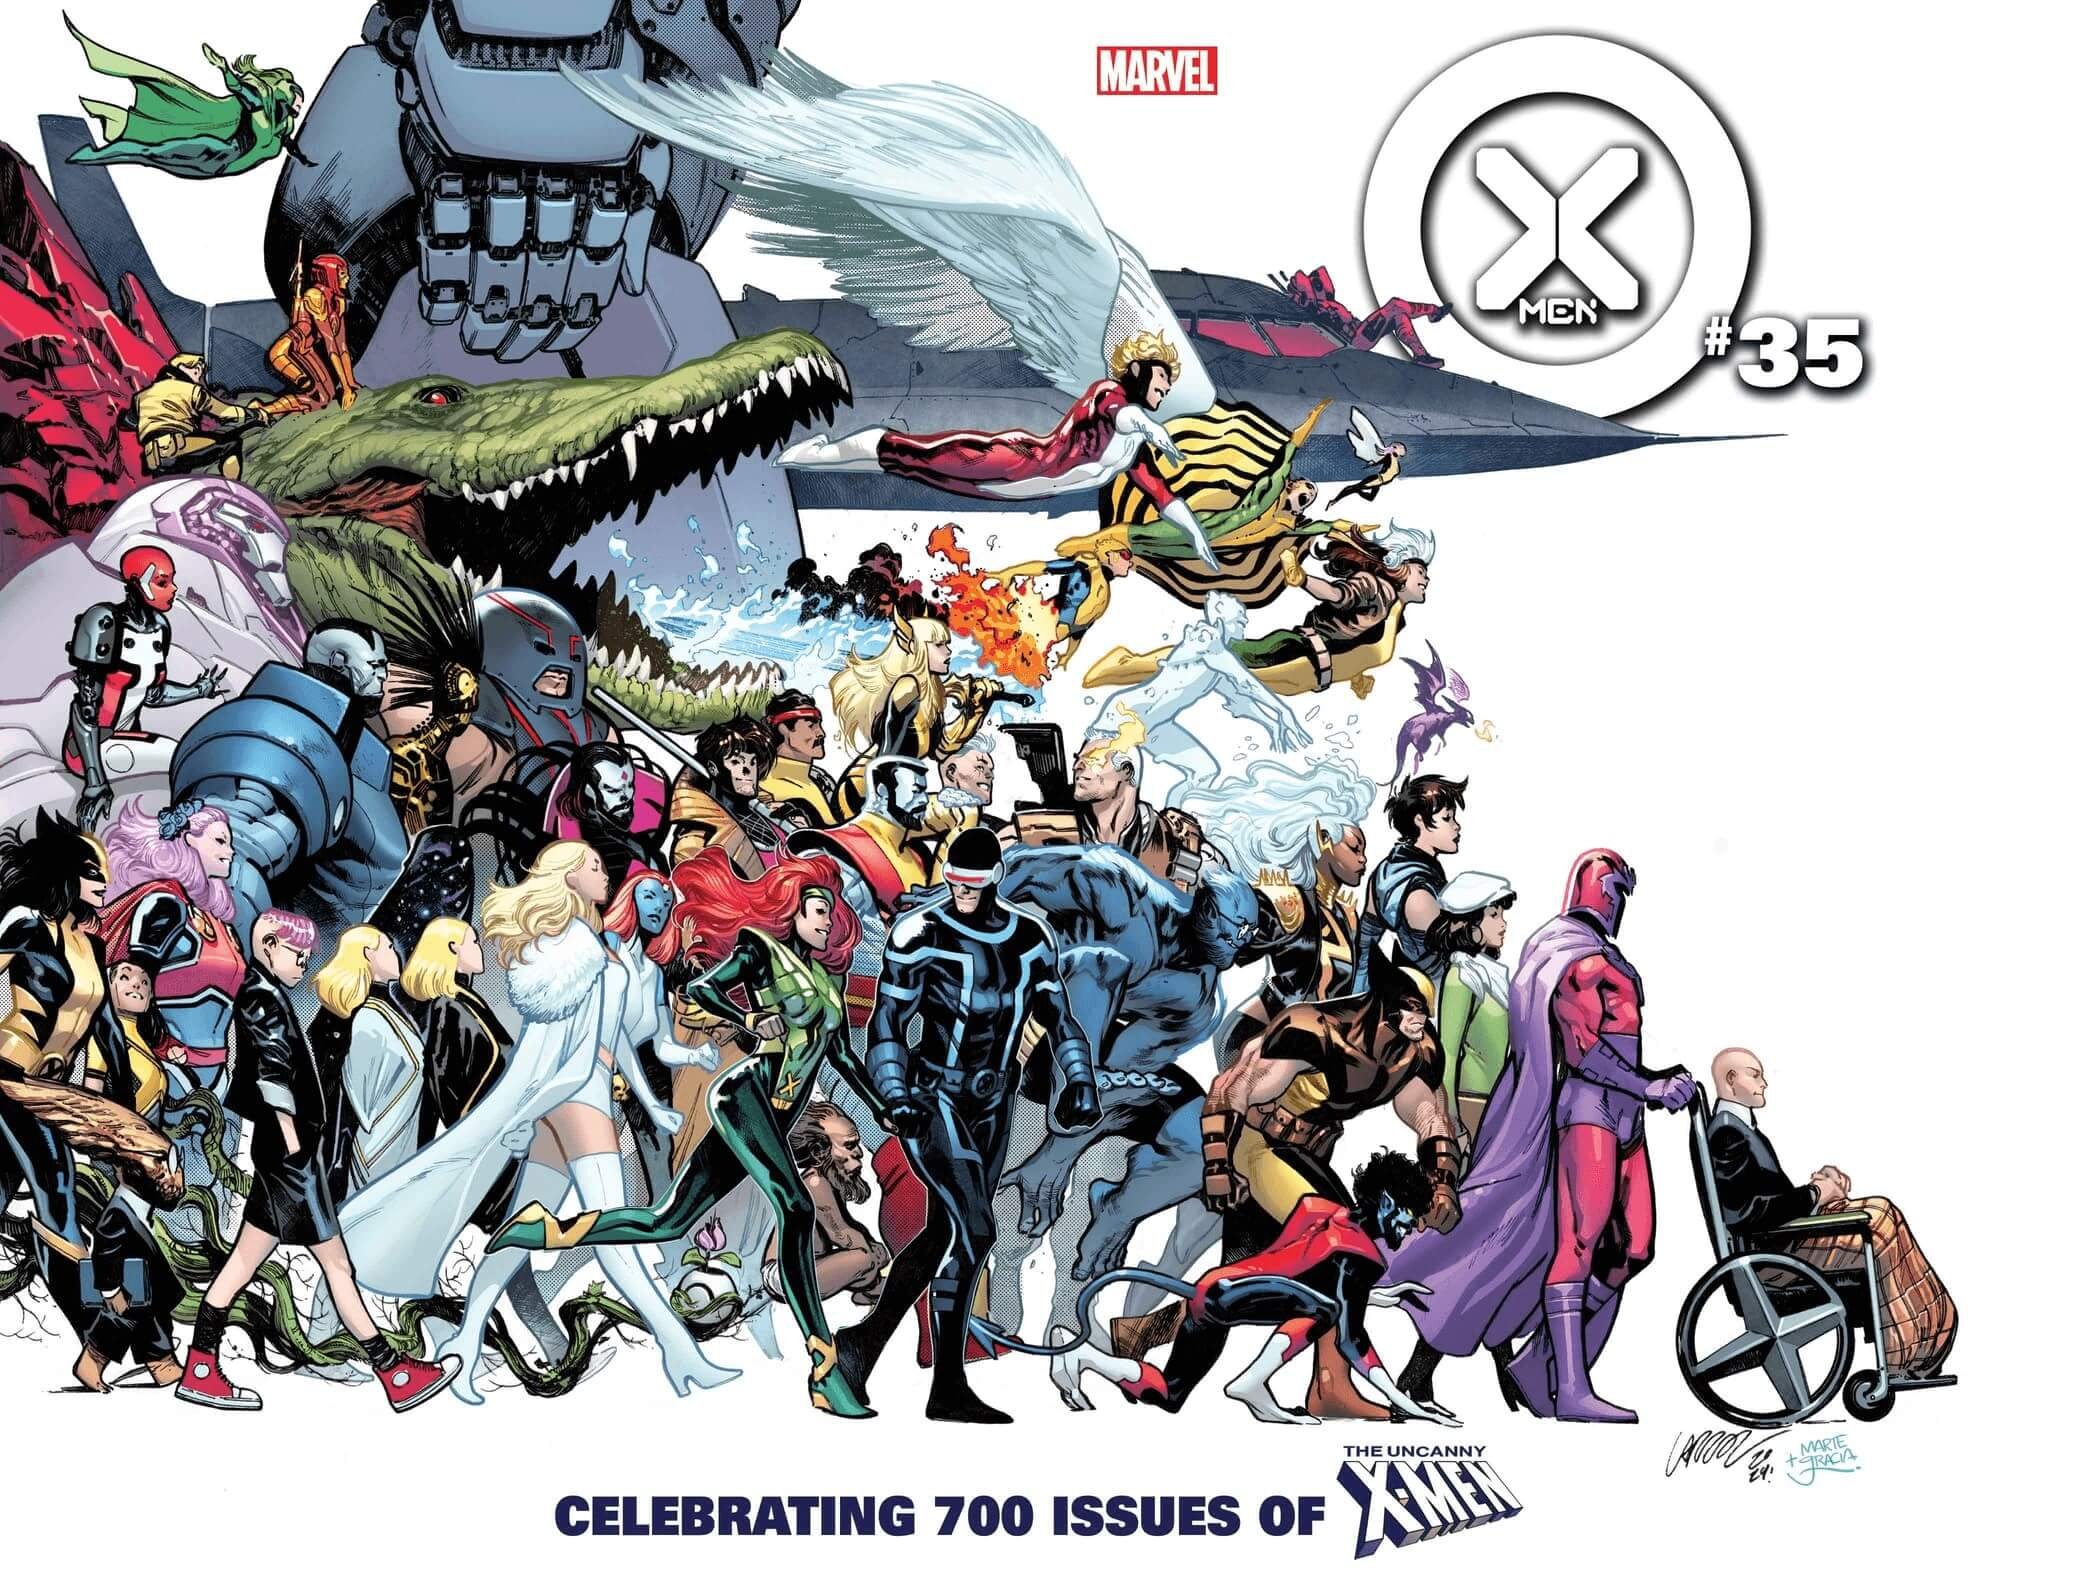 Cover di Pepe Larraz di X-Men 35, #700 secondo la numerazione Legacy di Uncanny X-Men